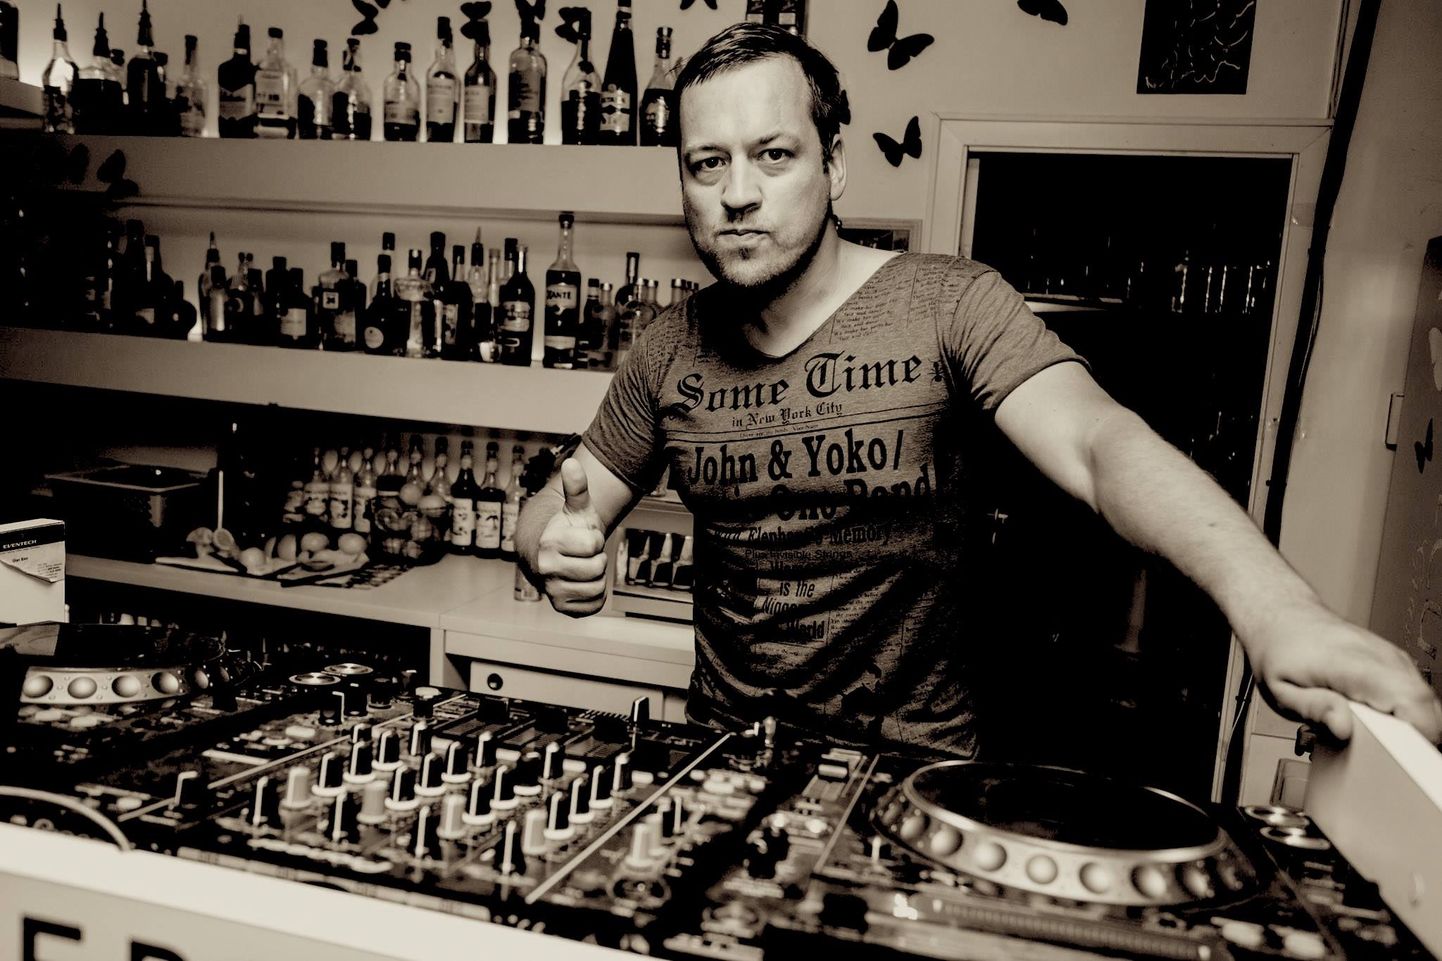 DJ Kermo Hert